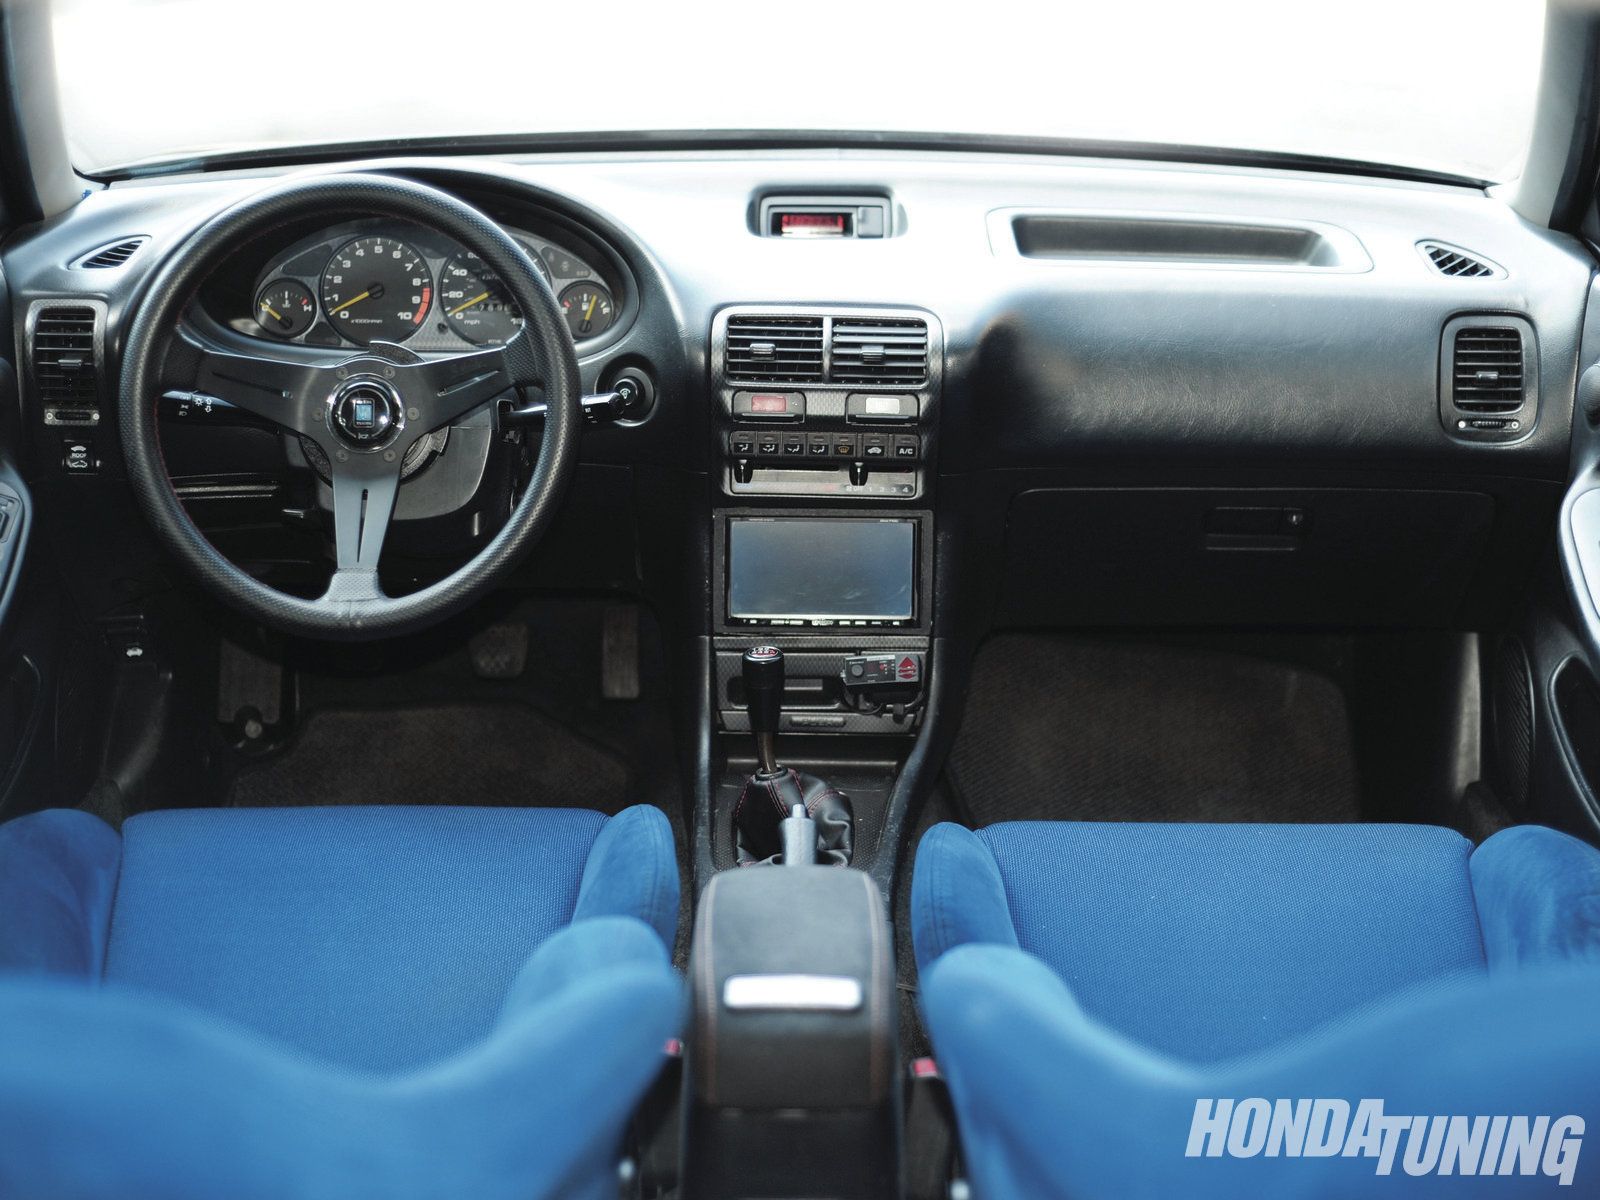 Honda Integra III 1993 - 1995 Sedan #4